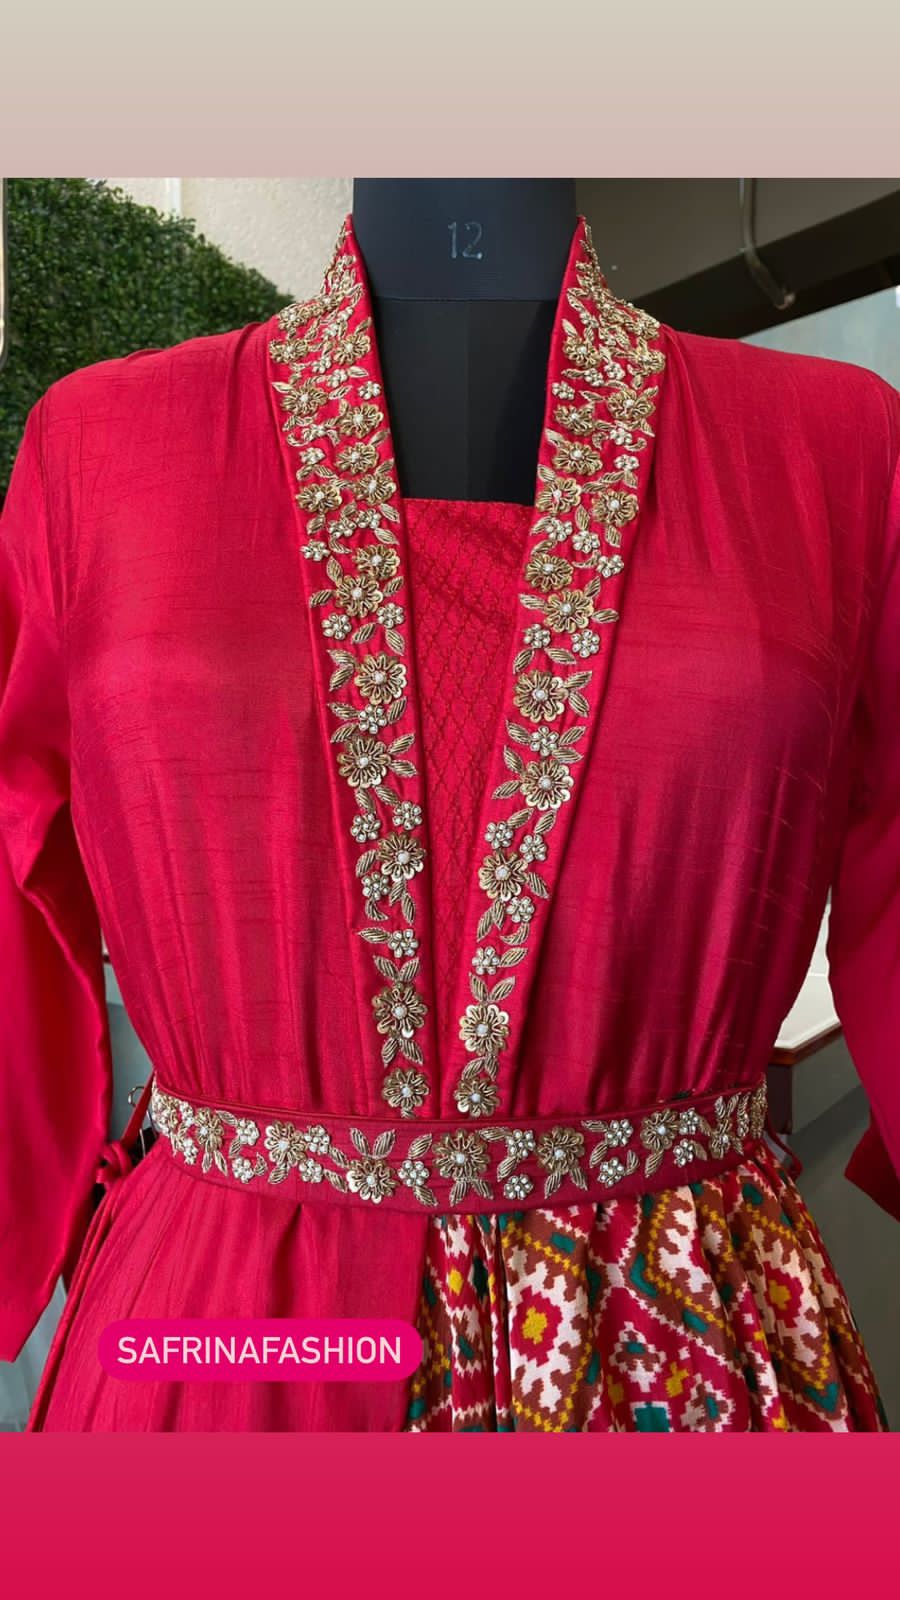 Susan designer indowestern dress